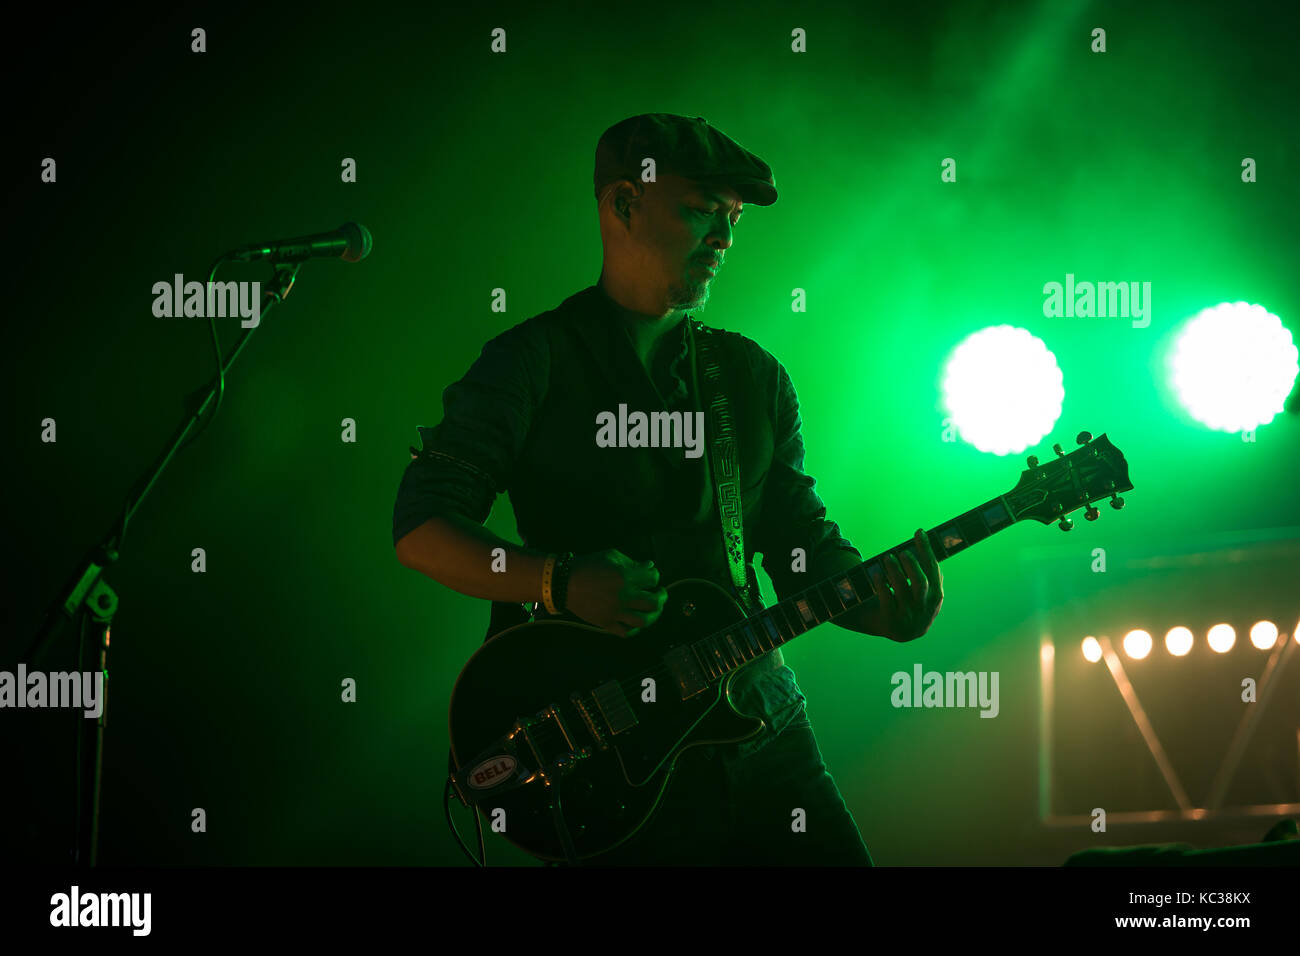 Norvegia, Oslo - Agosto 11, 2017. La American rock band Pixies esegue un concerto dal vivo durante un concerto di musica norvegese Øyafestivalen festival 2017 a Oslo. Qui il chitarrista Joey Santiago è visto dal vivo sul palco. Foto Stock